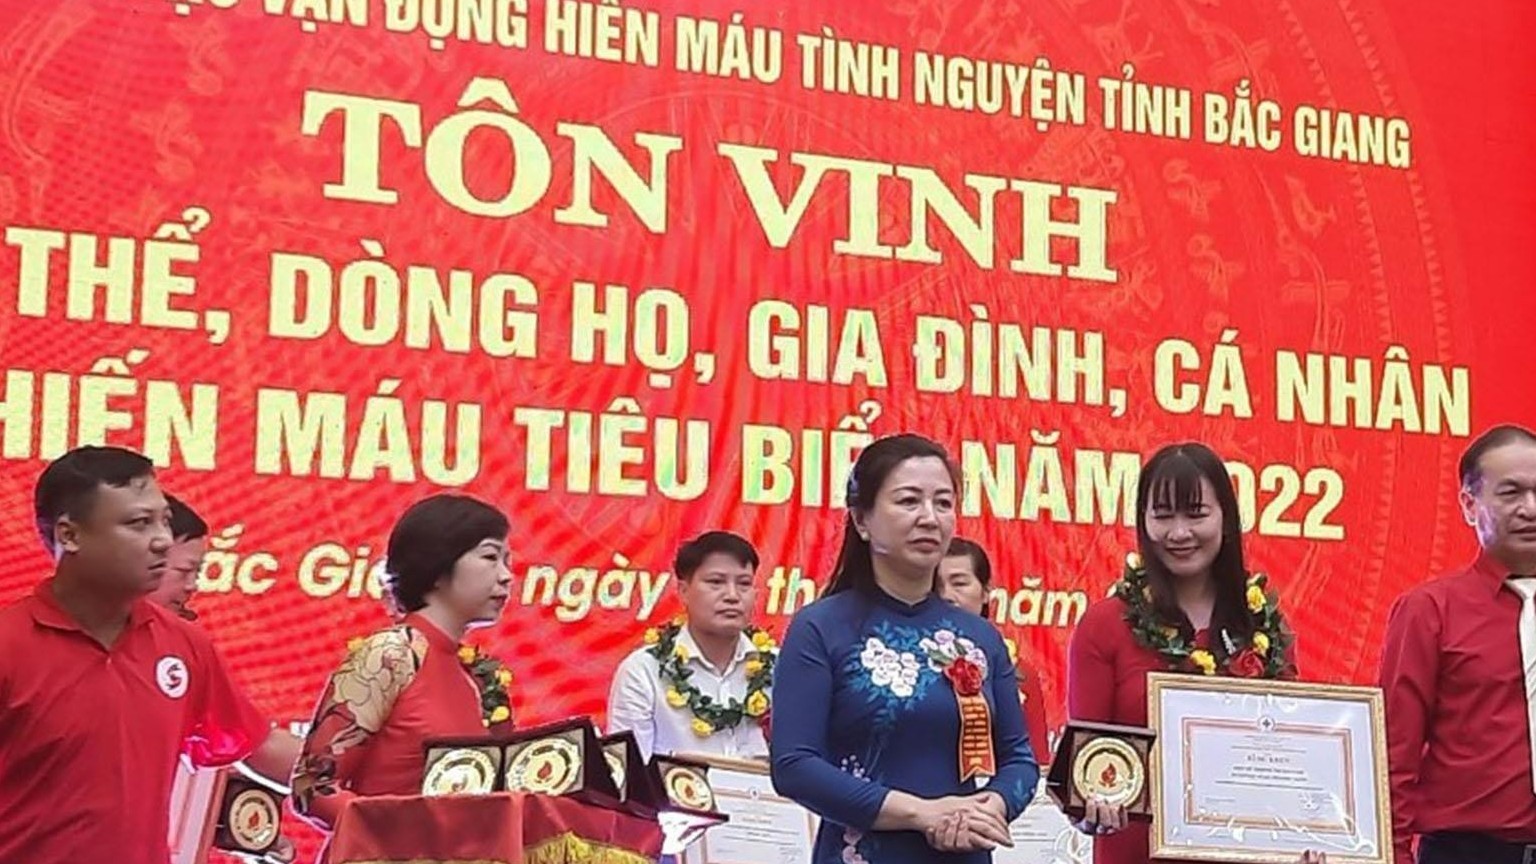 Tôn vinh tập thể, dòng họ, gia đình, cá nhân hiến máu tiêu biểu tại Bắc Giang.